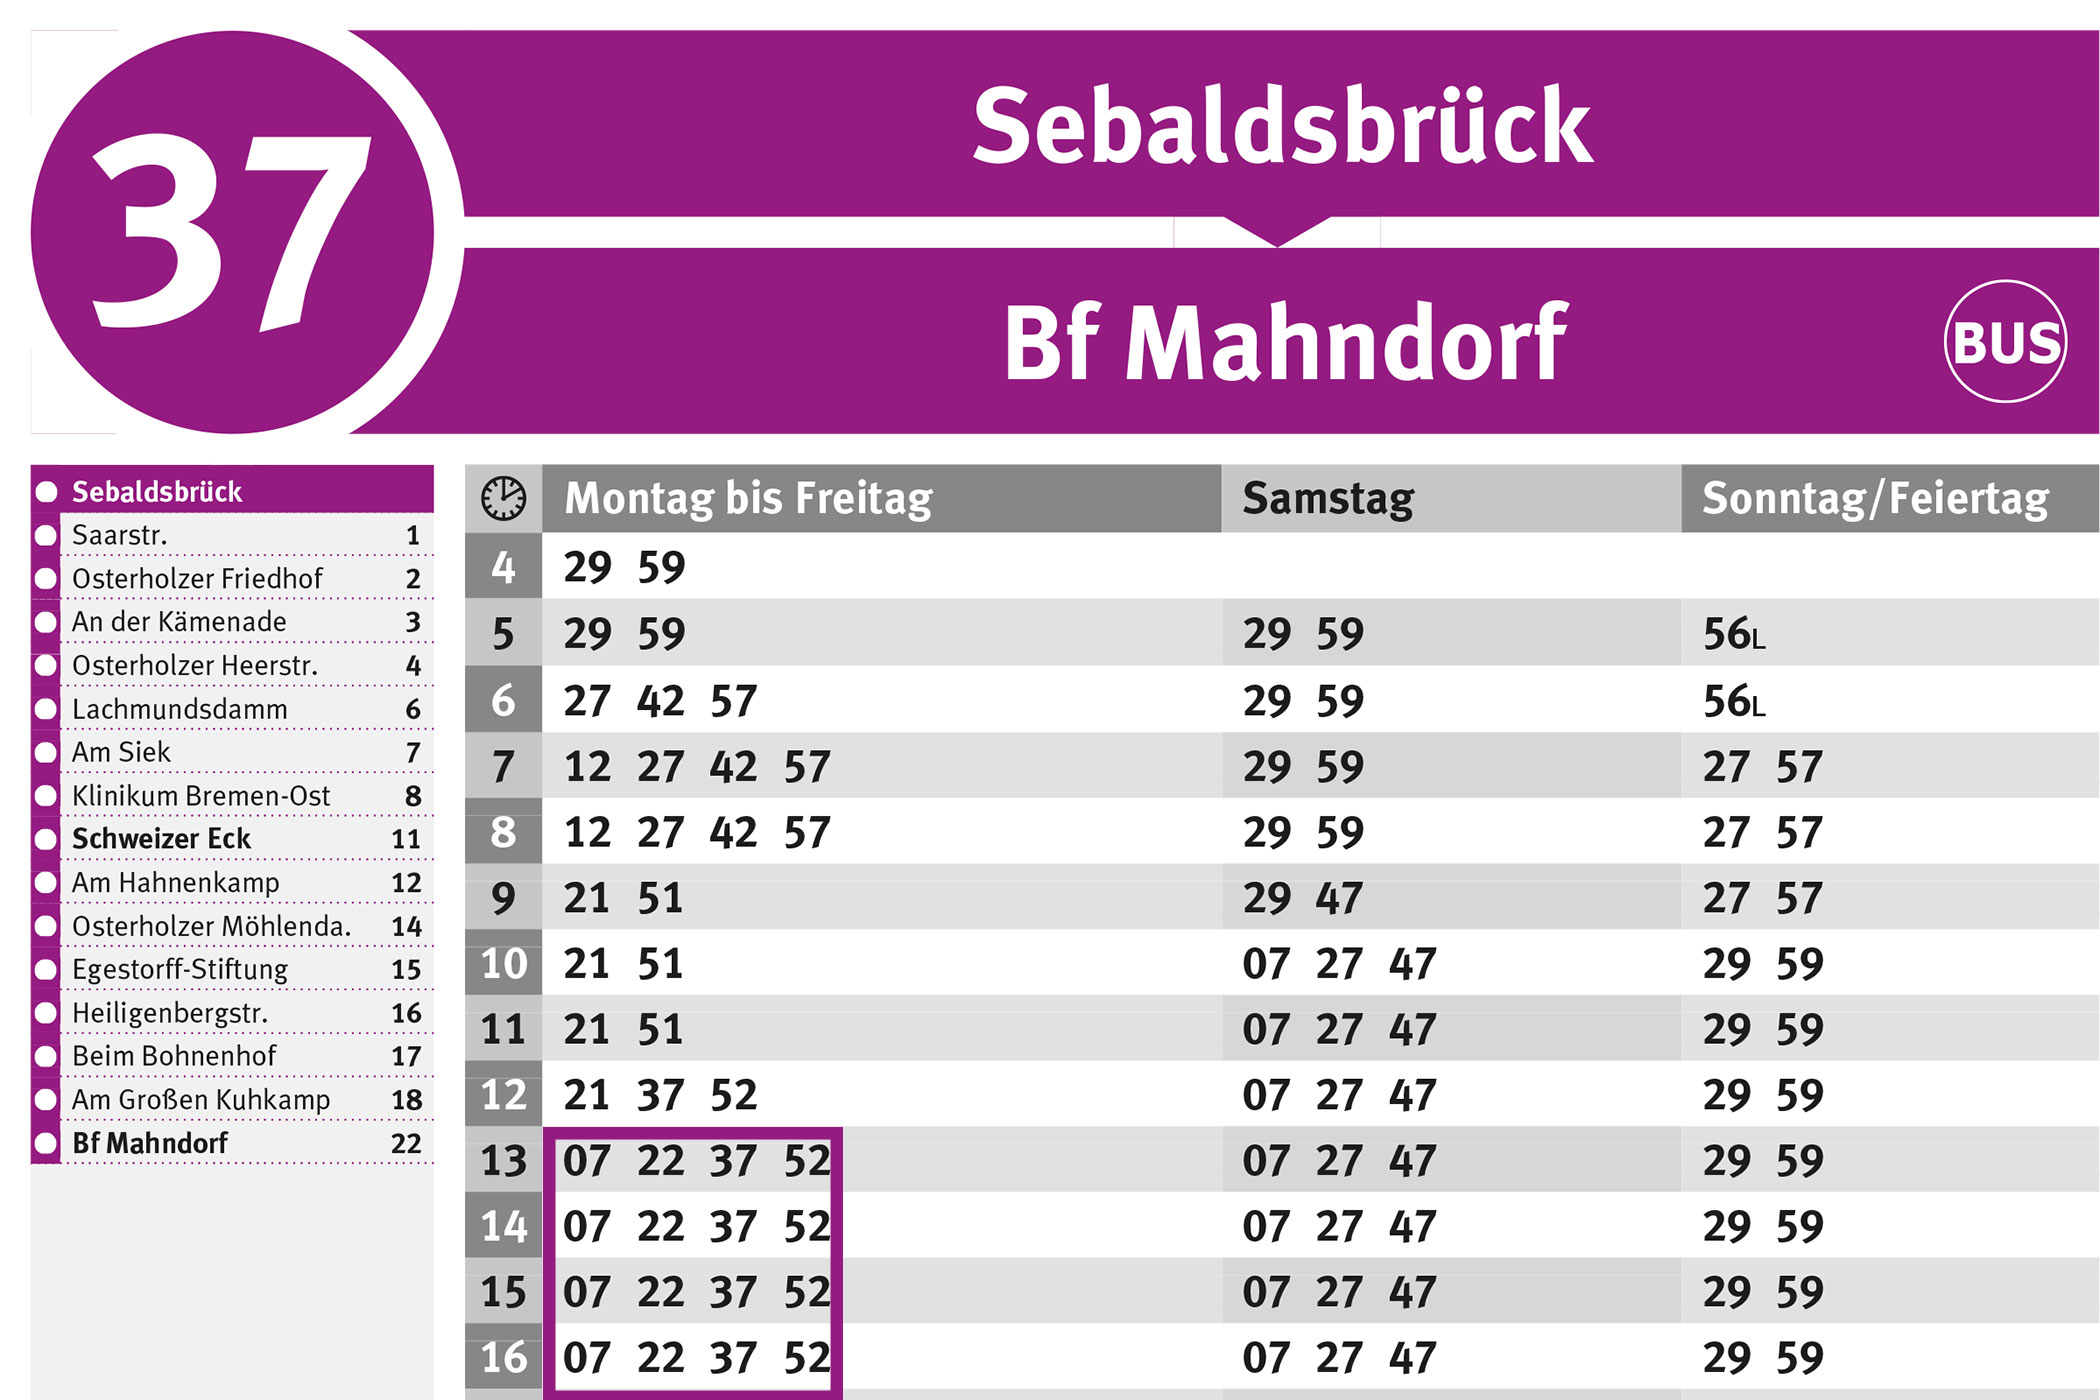 BSAG-Haltestellenfahrplan Sebaldsbrück Linie 37, gültig 2018/2019